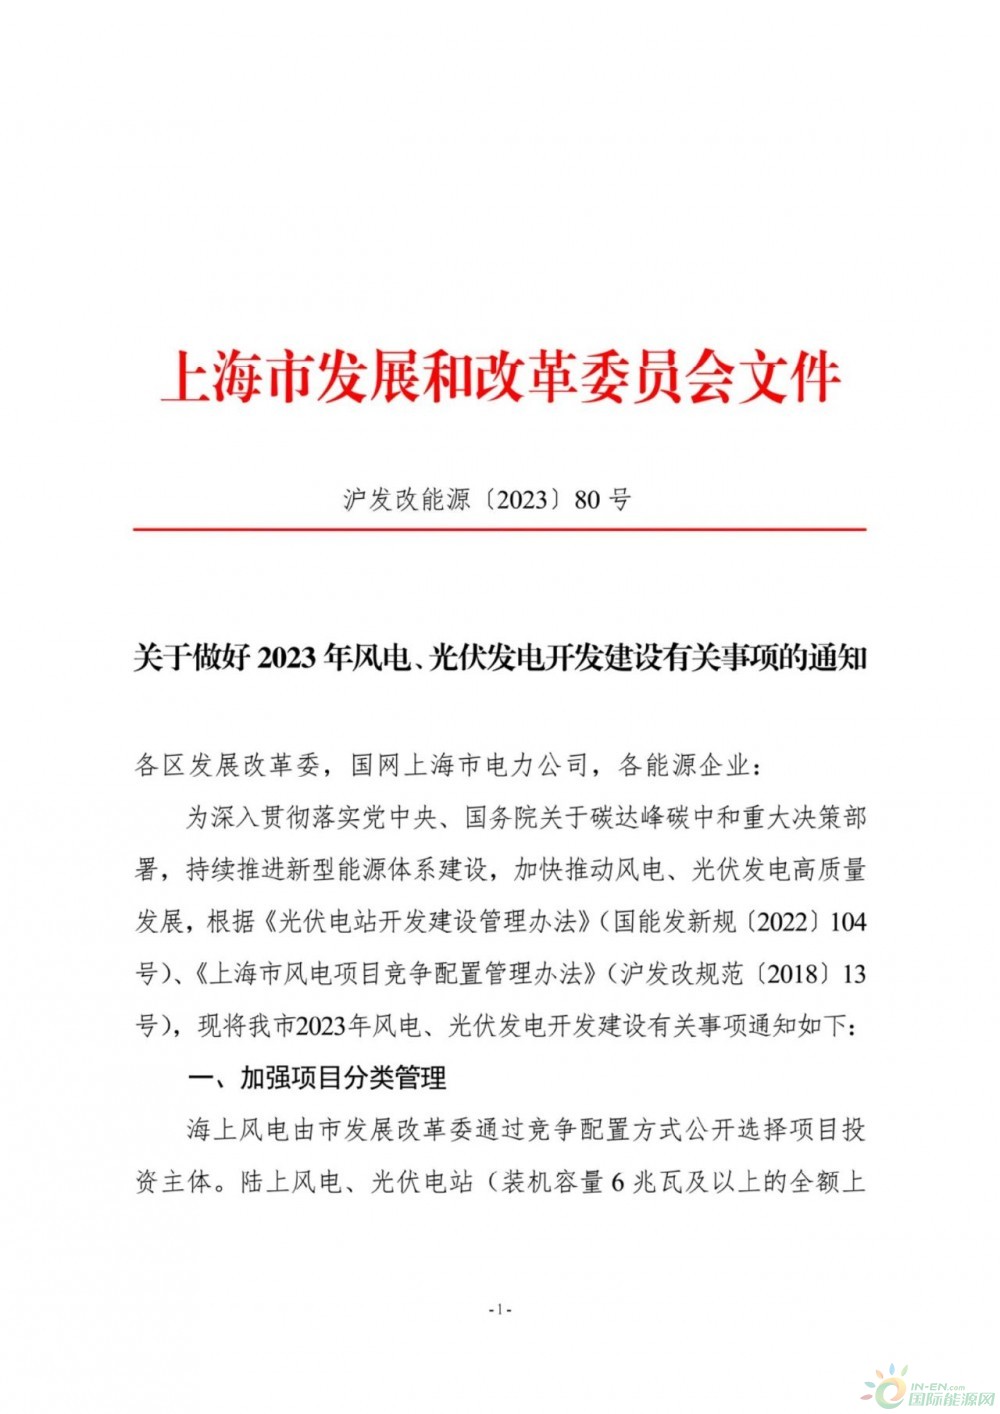 上海市发布风光建设方案！项目未按要求完成进度移出年度方案